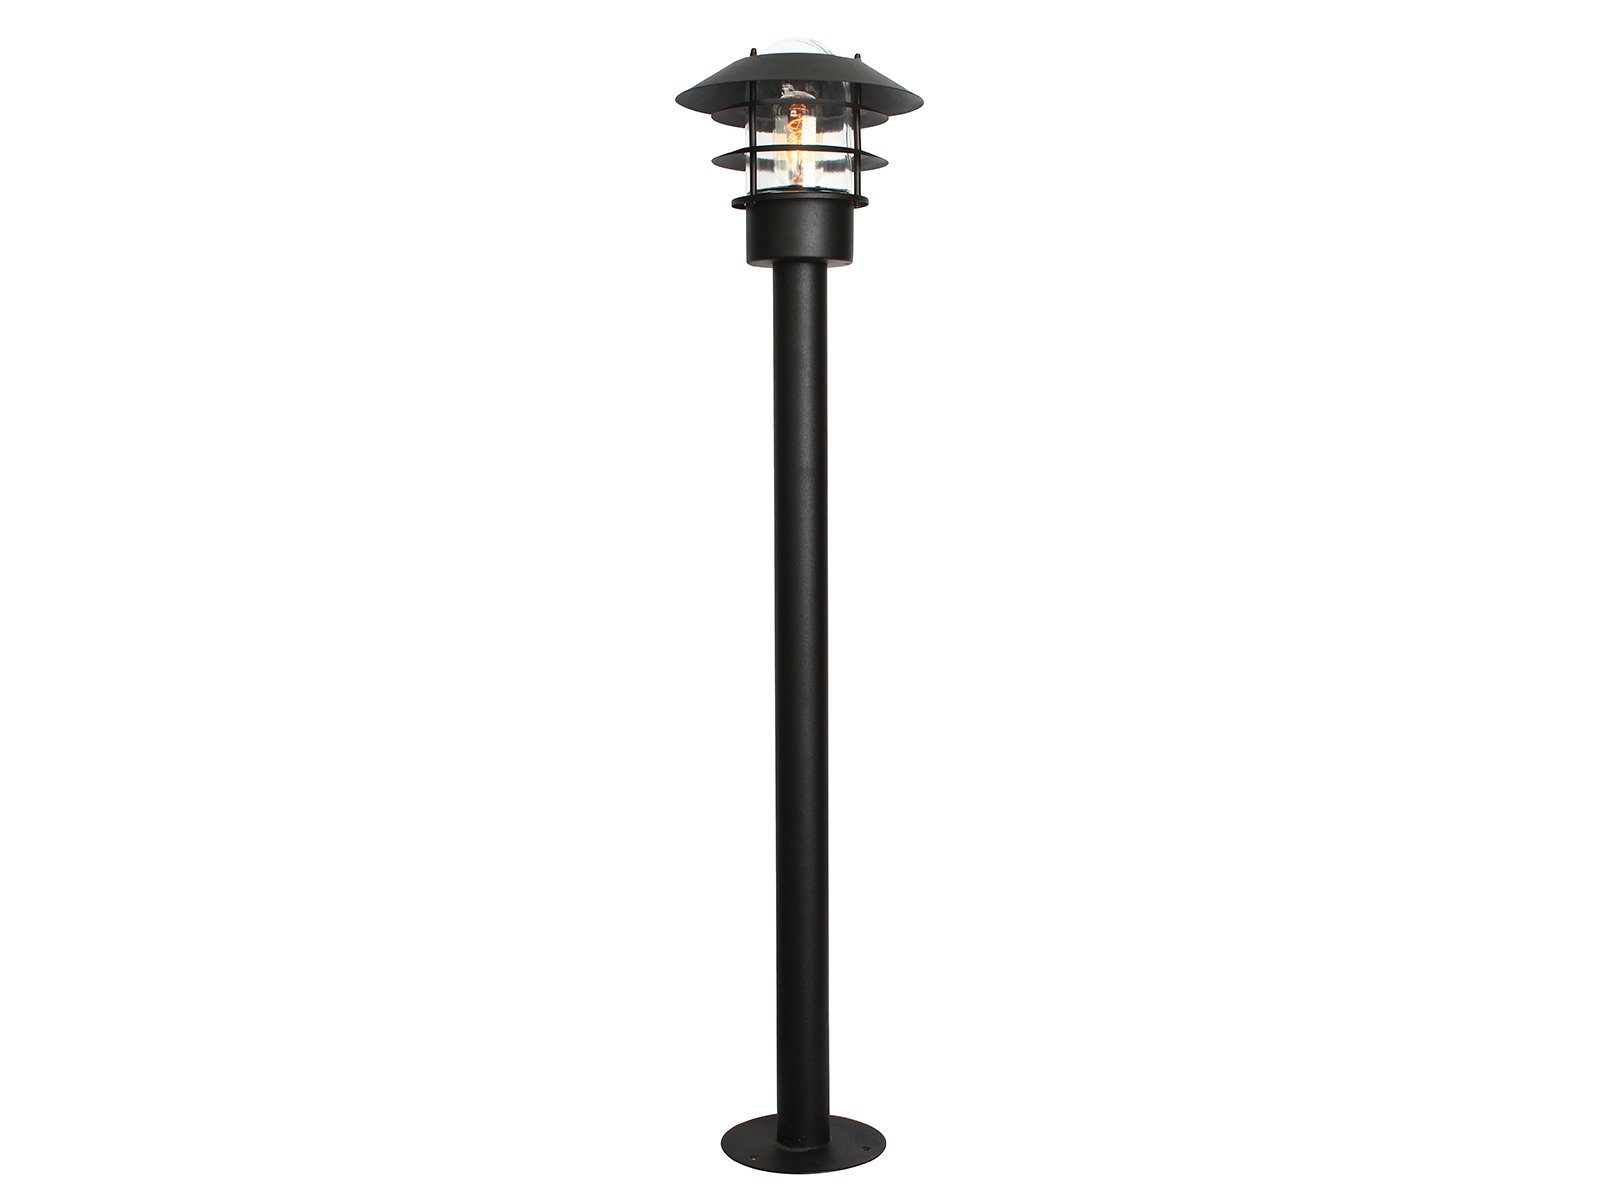 beleuchten, Schwarz Industrial wechselbar, 100cm meineWunschleuchte LED Außen-Stehlampe, LED Pollerlampen Höhe warmweiß, Garten-wegbeleuchtung